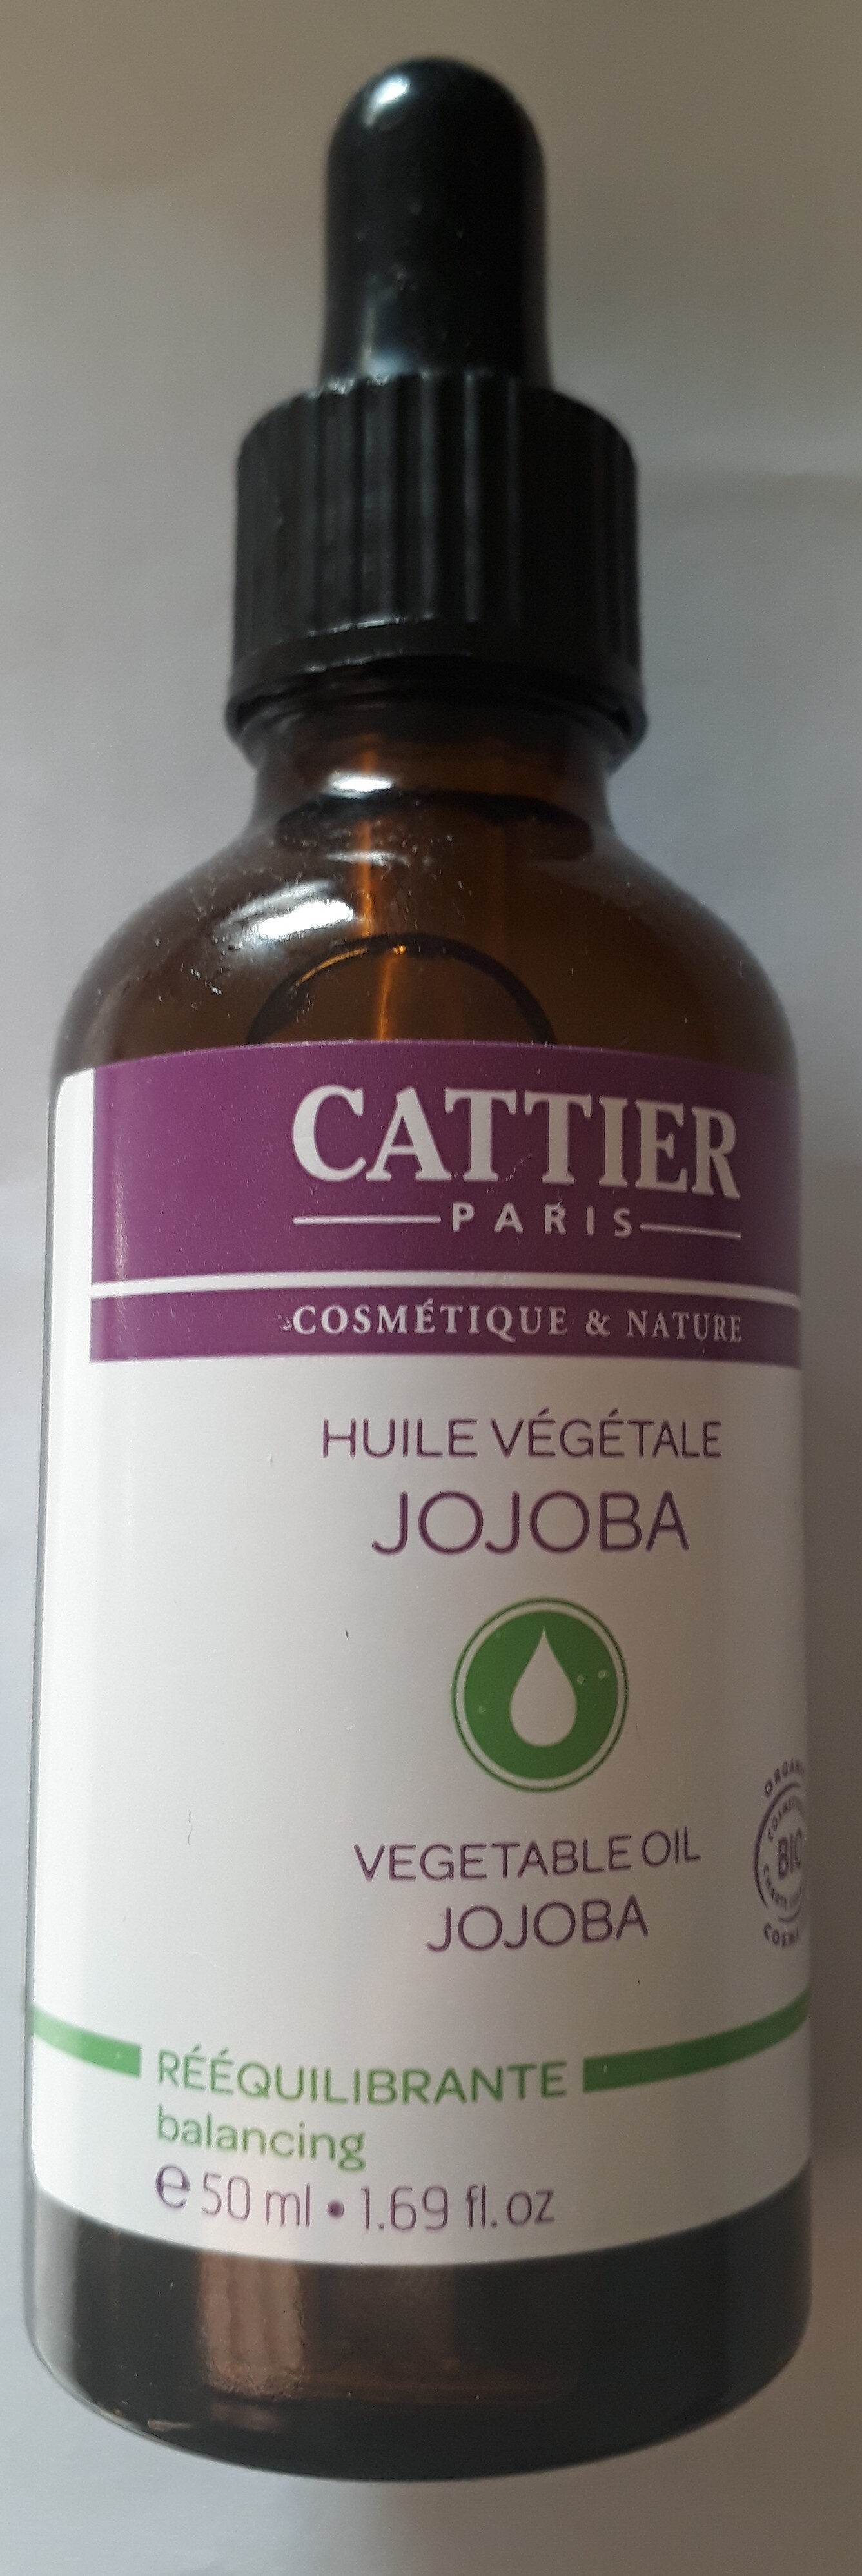 Huile végétale de Jojoba - Product - en